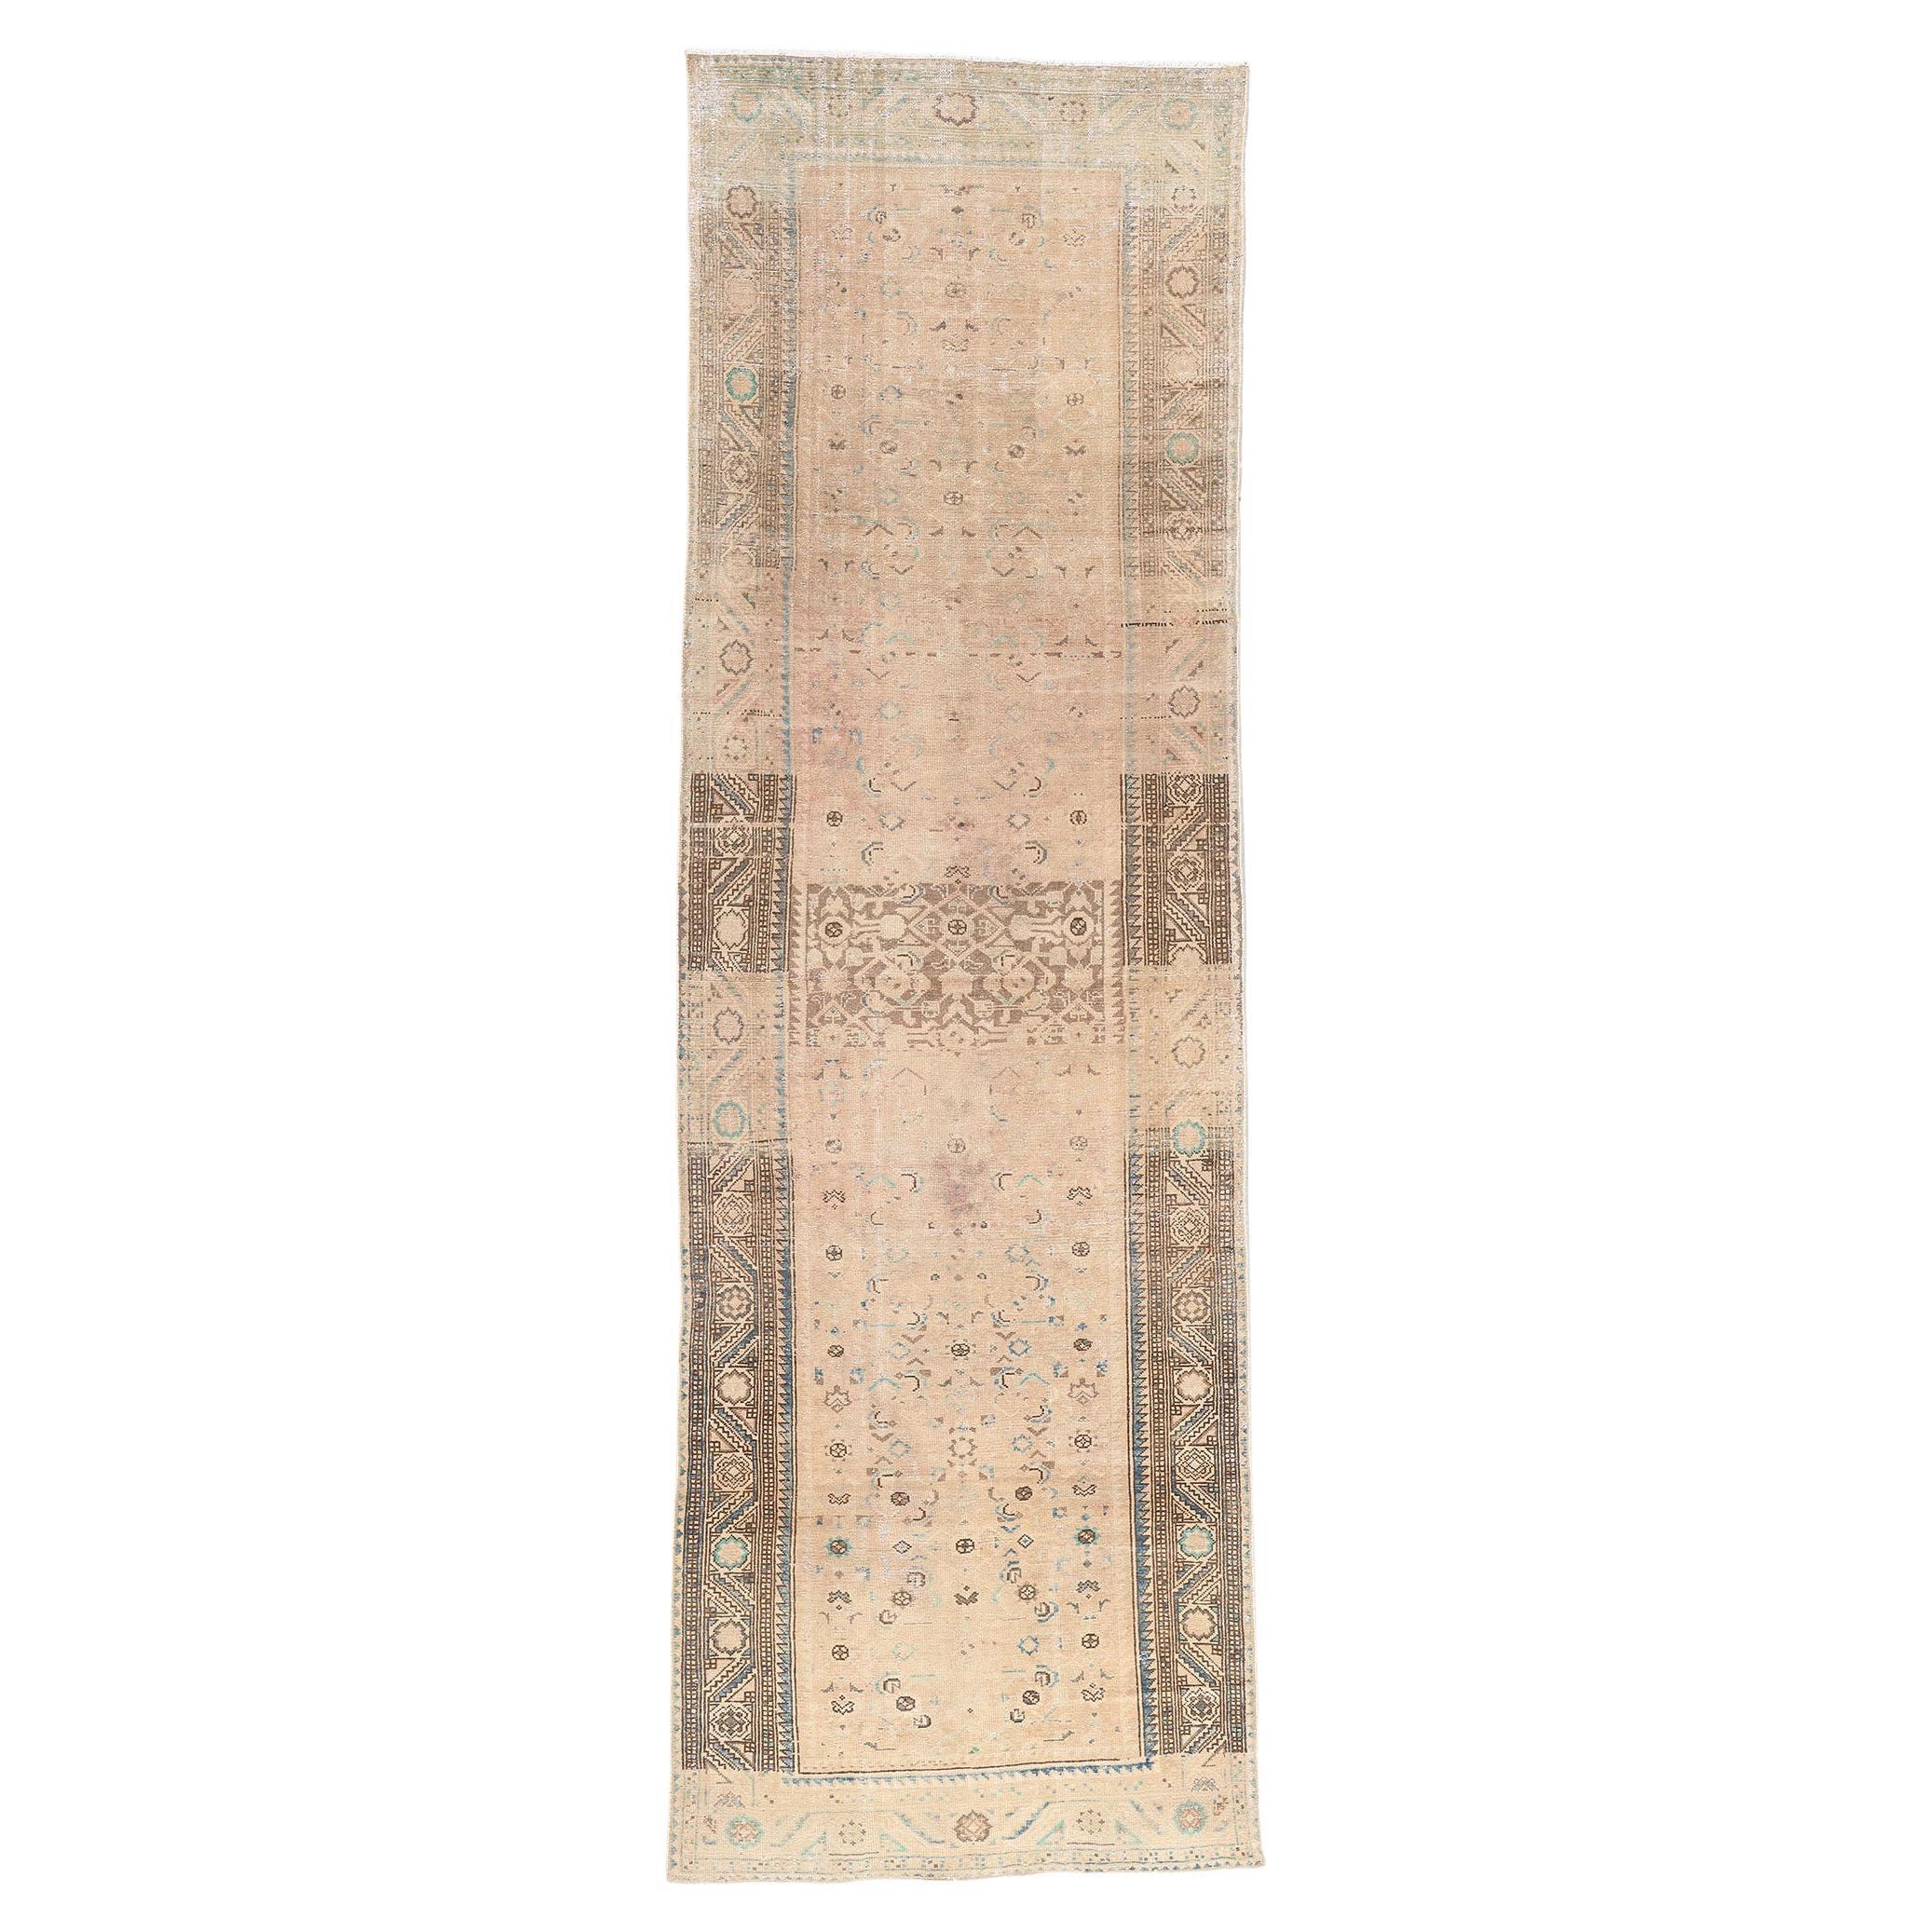 Persischer Malayer-Teppich im Vintage-Look, verblasste Eleganz trifft auf entspannte Raffinesse